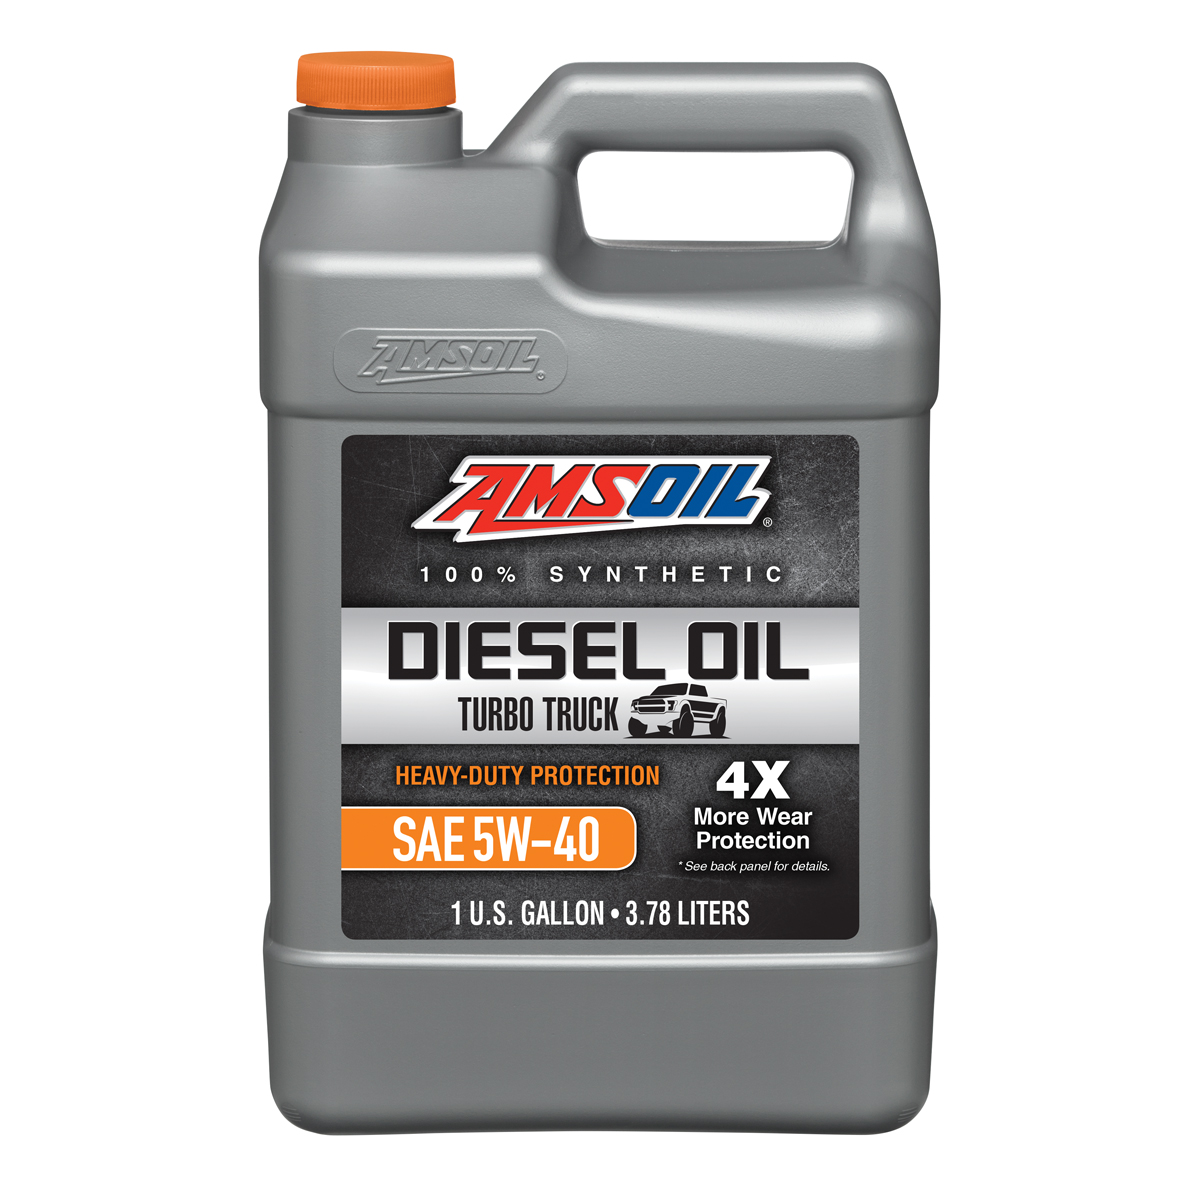 Heavy-Duty Synthetic Diesel Oil 5W-40, 1G